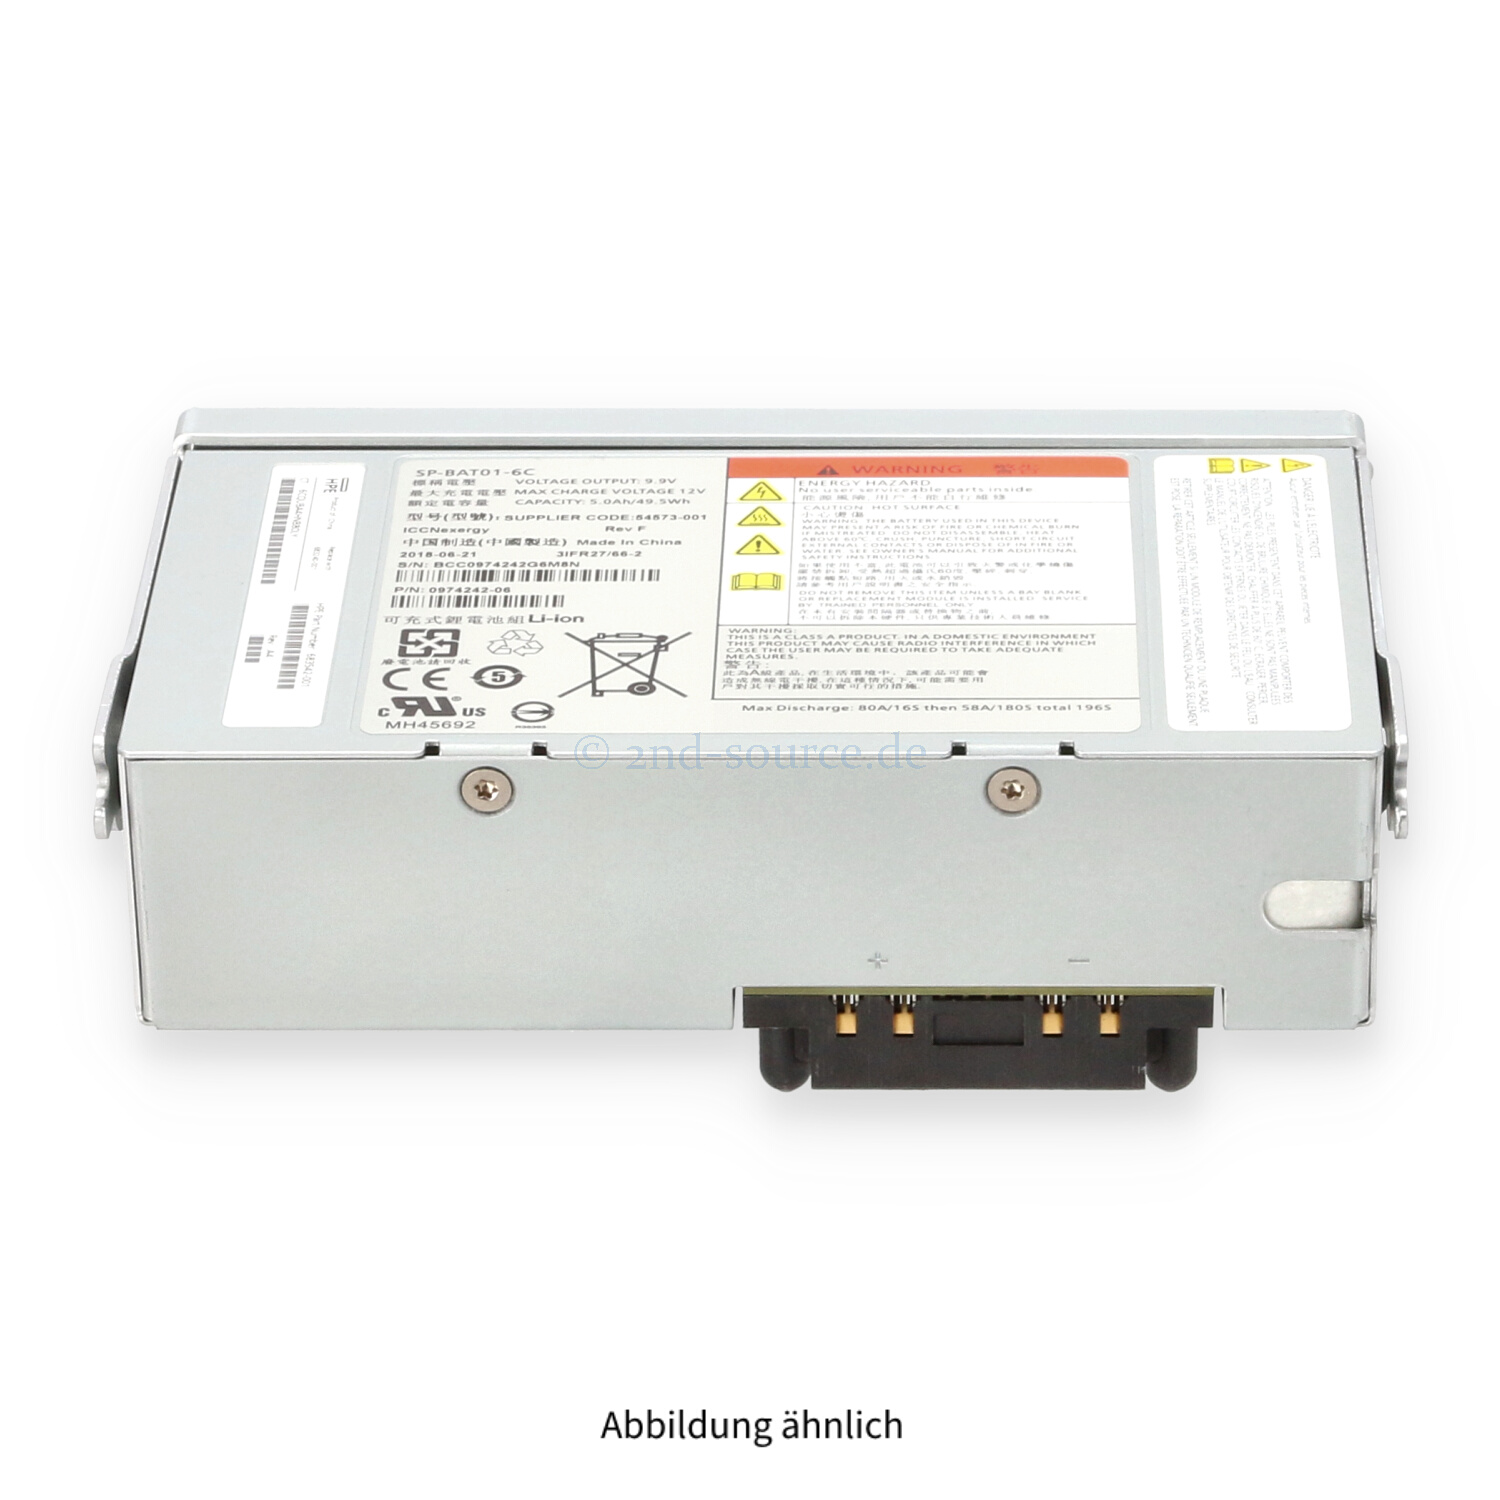 HPE 3PAR Battery Module 683240-001 683242-001